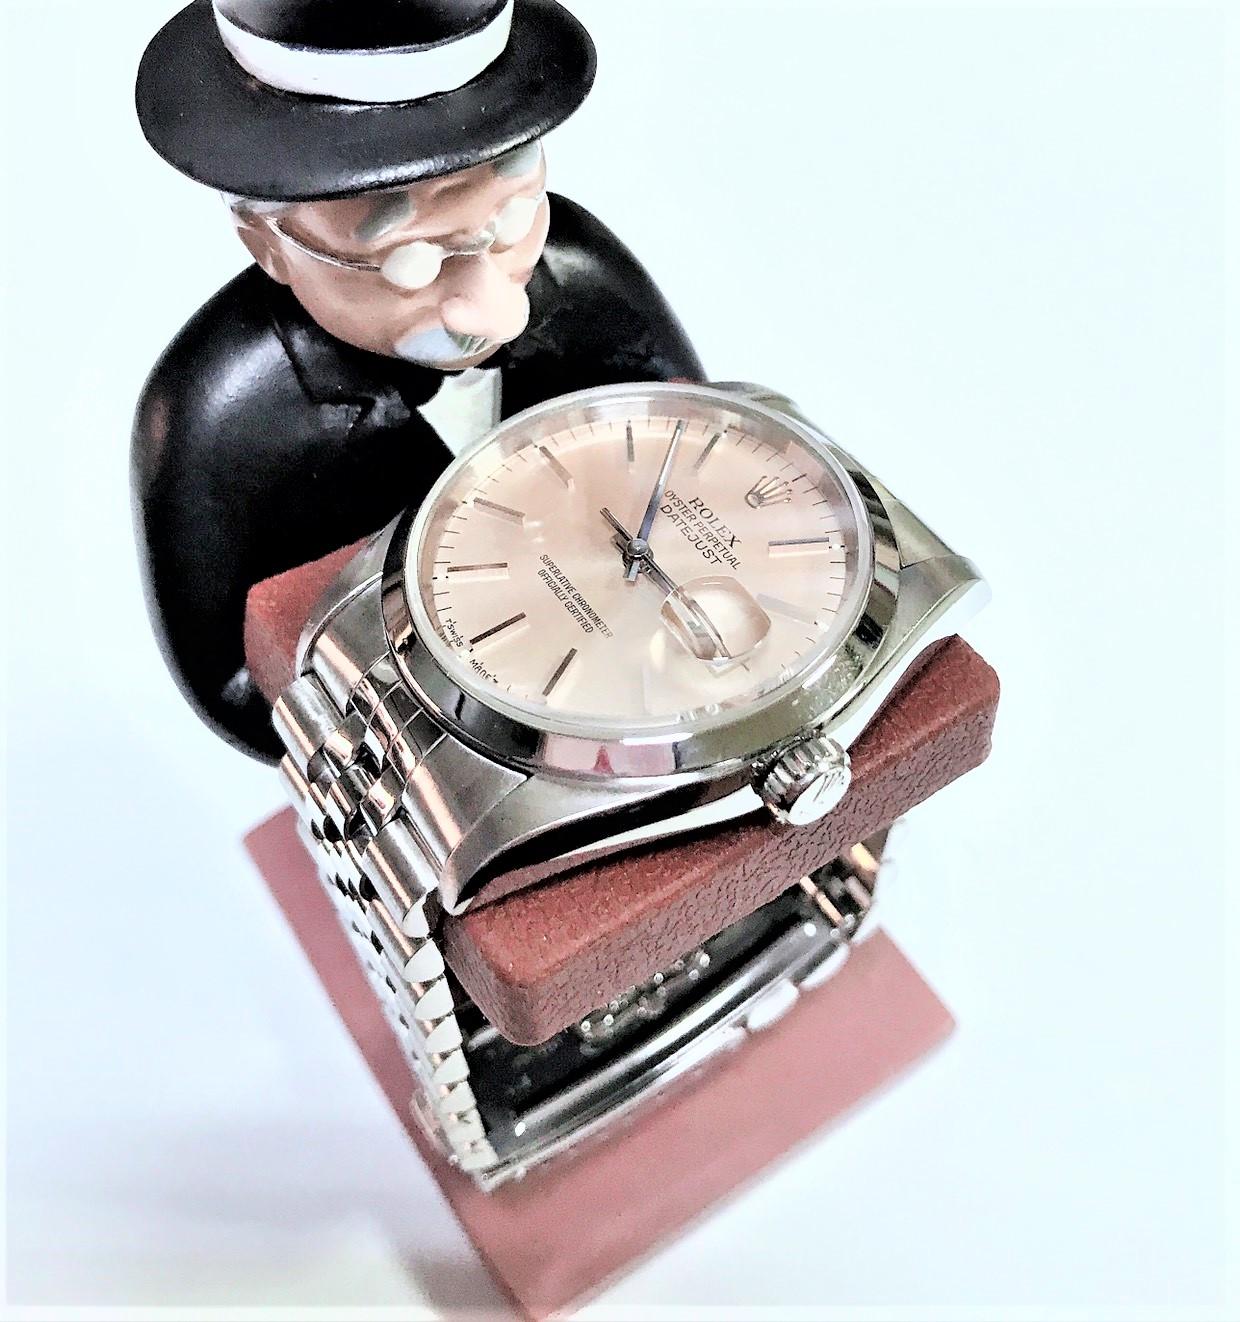 ROLEX 勞力士 DATEJUST 16200 蠔式不鏽鋼自動腕錶 36mm n0771